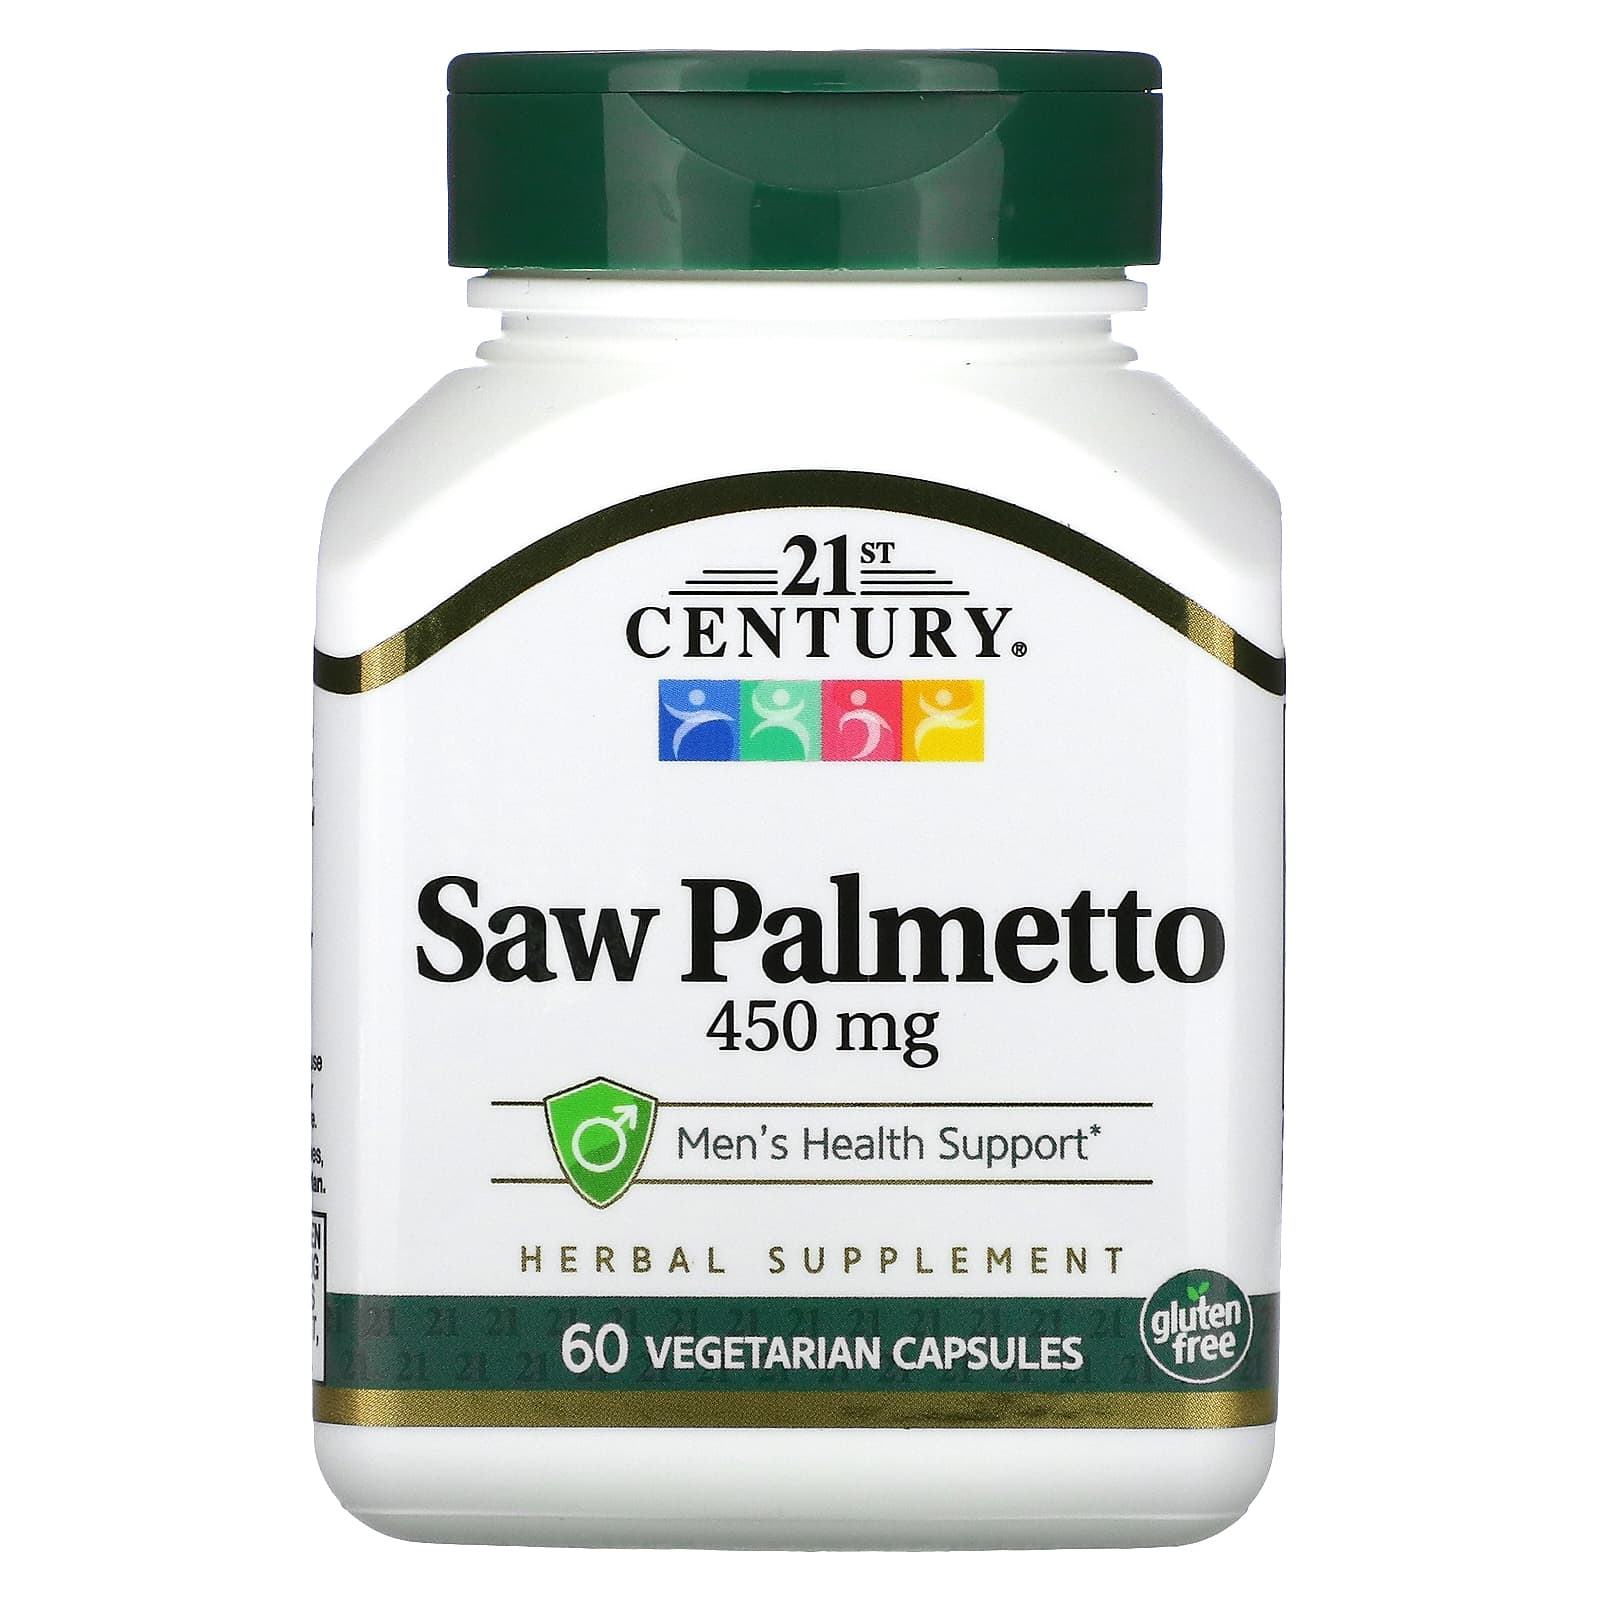 21st Century Saw Palmetto 450 mg capsules price